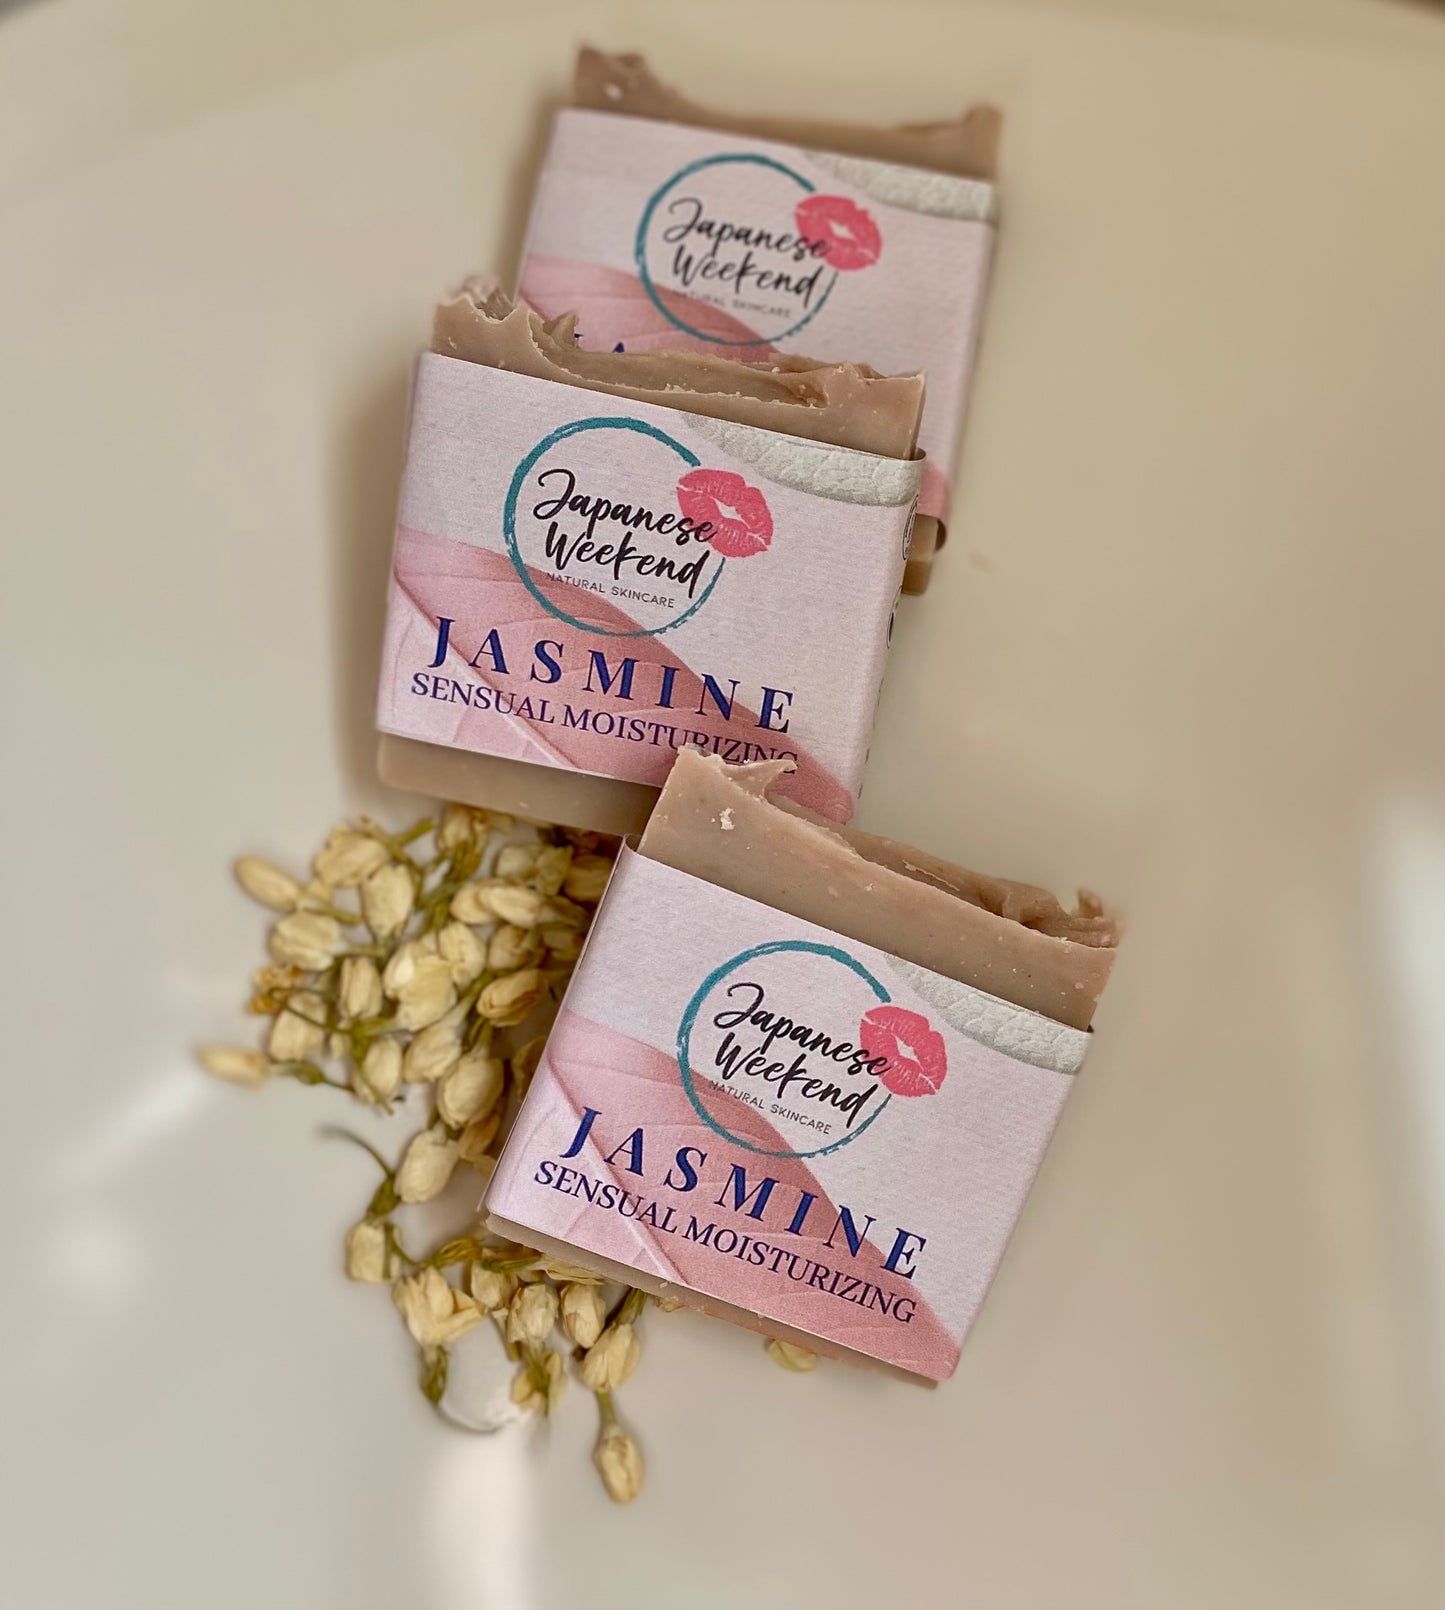 Jasmine (Sensual Moisturizing) Soap Bar